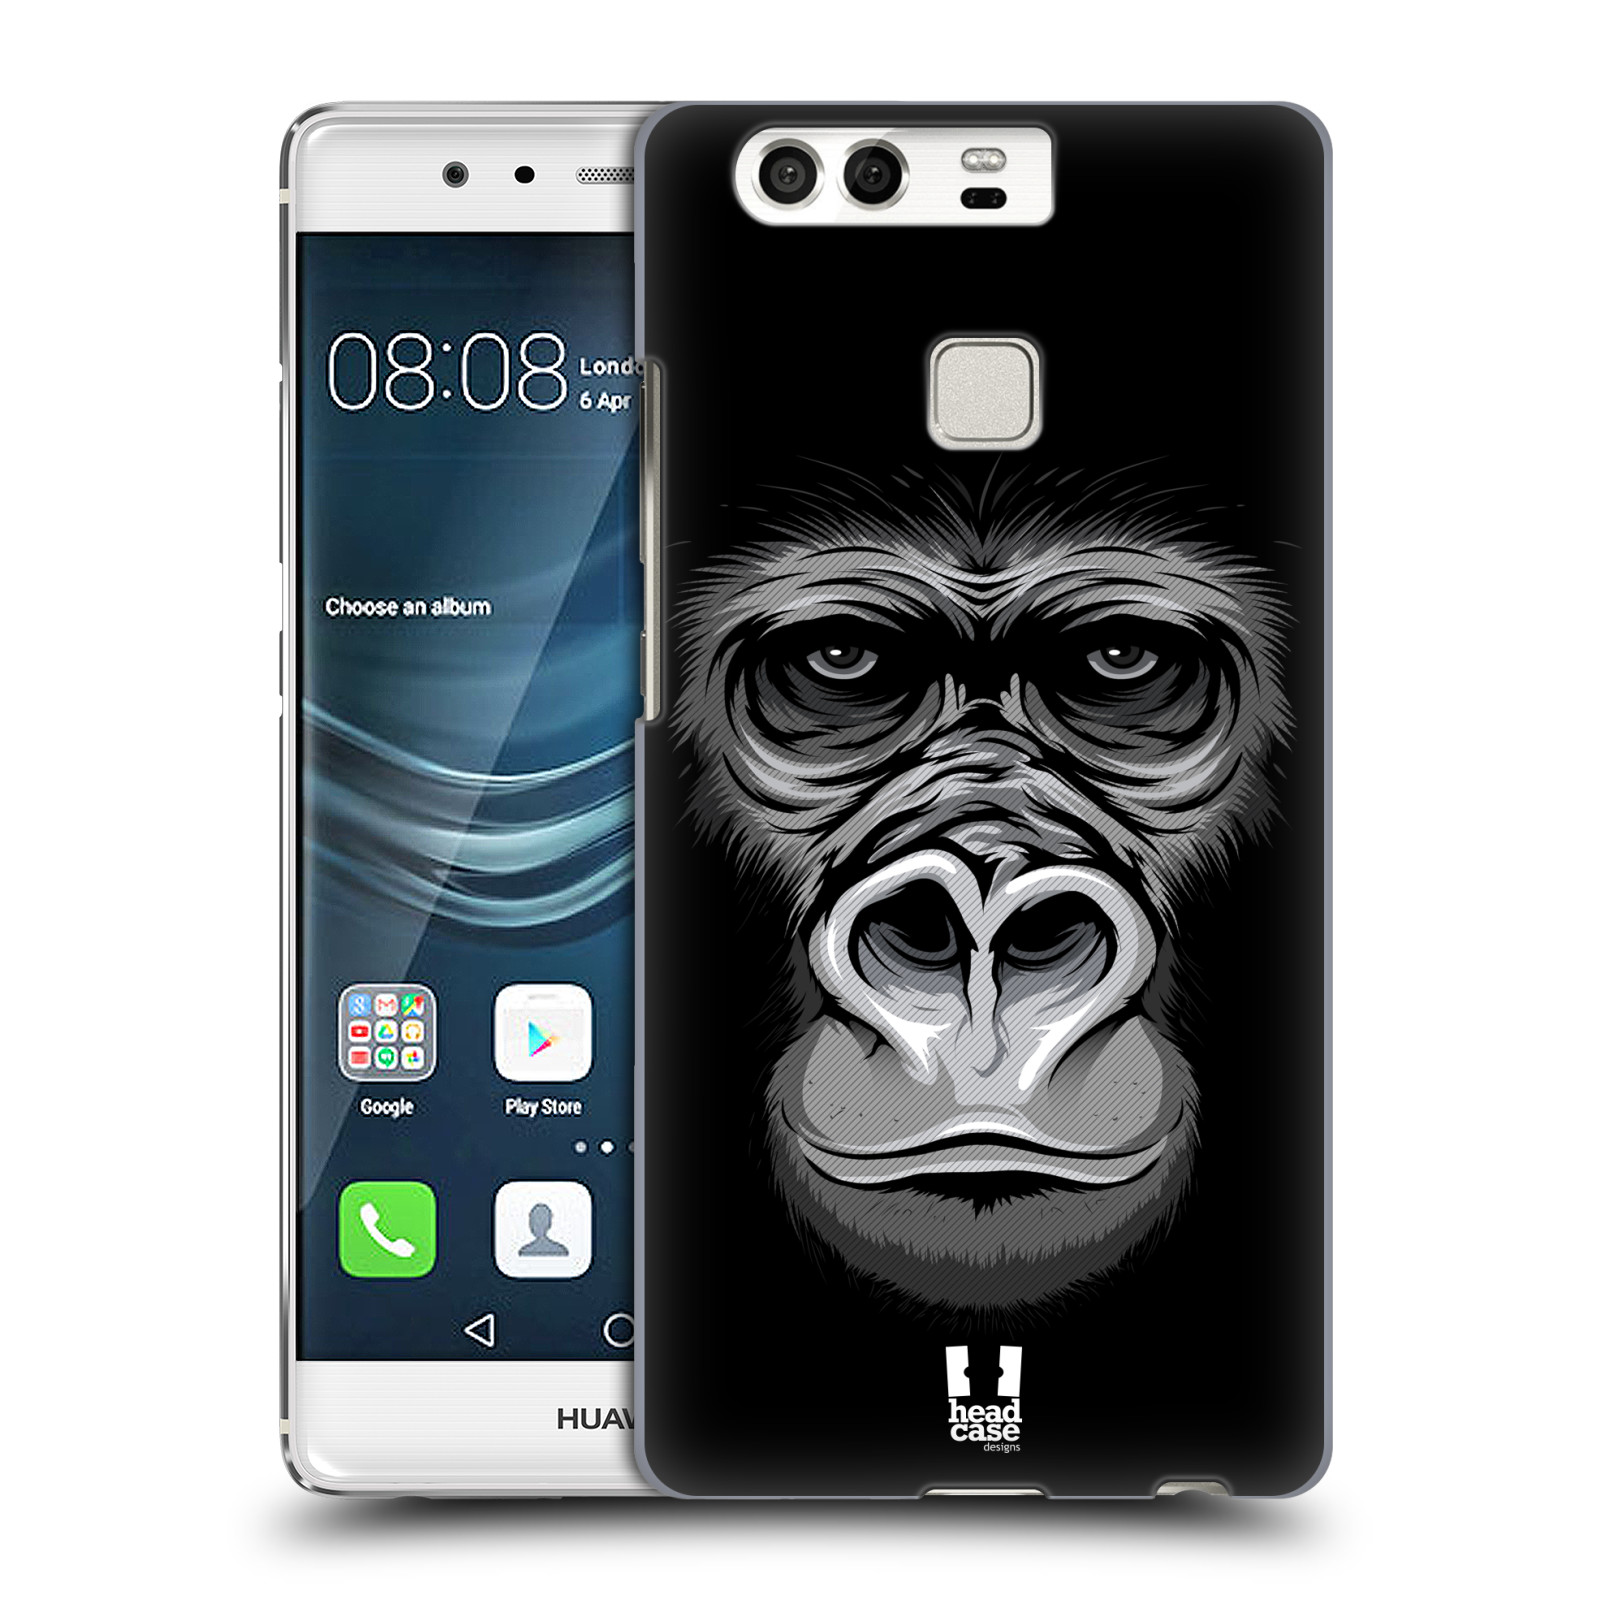 HEAD CASE plastový obal na mobil Huawei P9 / P9 DUAL SIM vzor Zvíře kreslená tvář 2 gorila